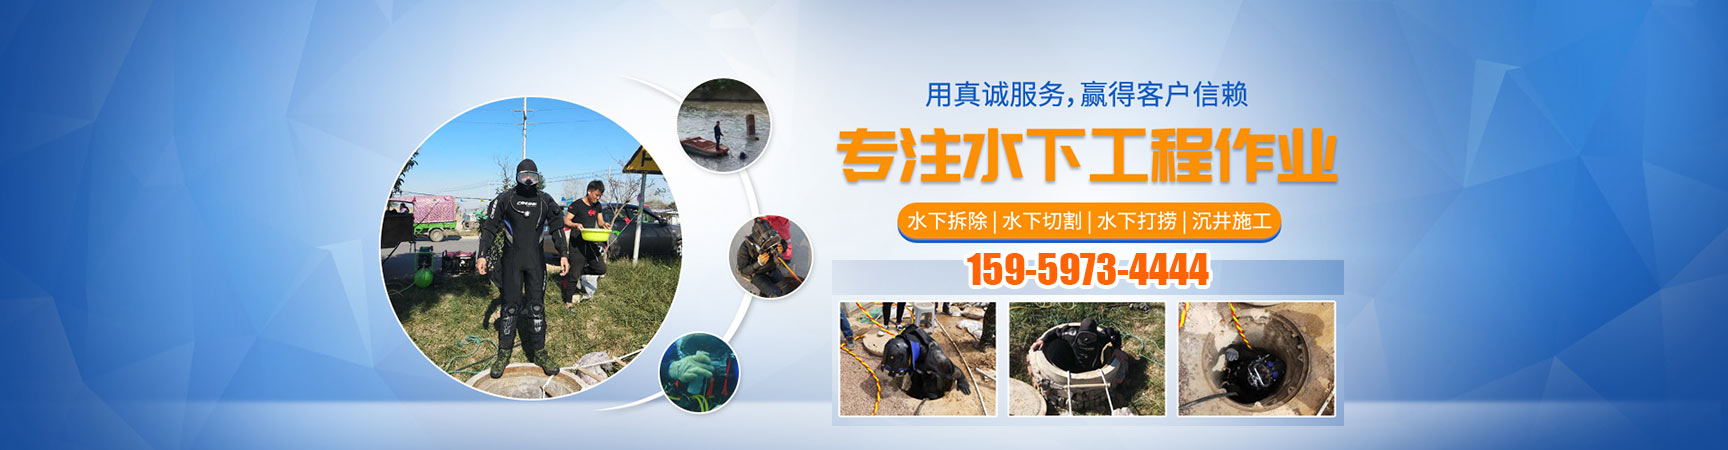 水下工程设施安装、陕西本地水下工程设施安装、陕西、陕西水下工程设施安装